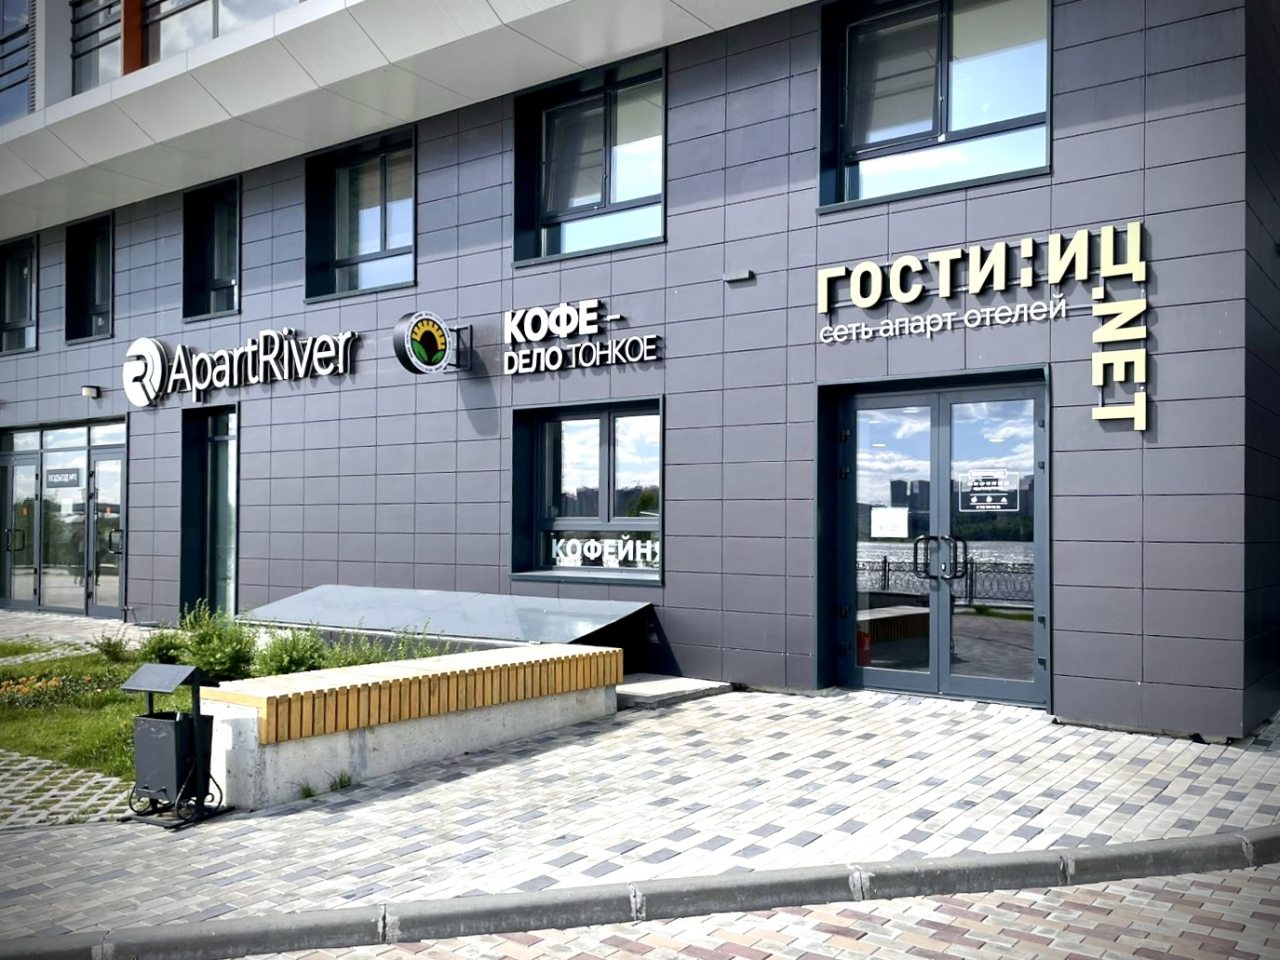 Апарт-отель Гостиниц.NET на Обской, Новосибирск